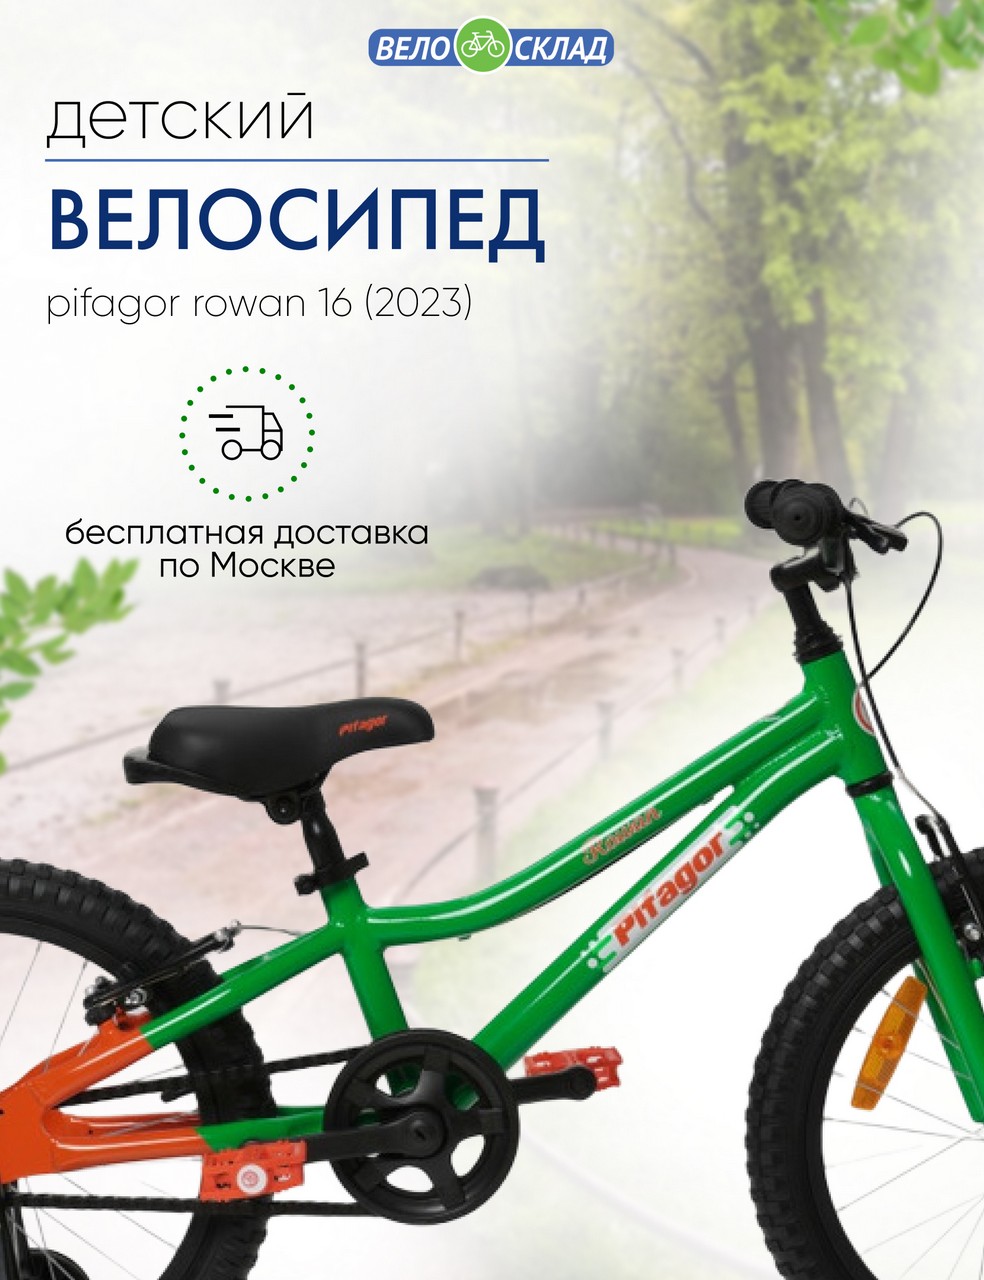 Детский велосипед Pifagor Rowan 16, год 2023, цвет Зеленый-Оранжевый